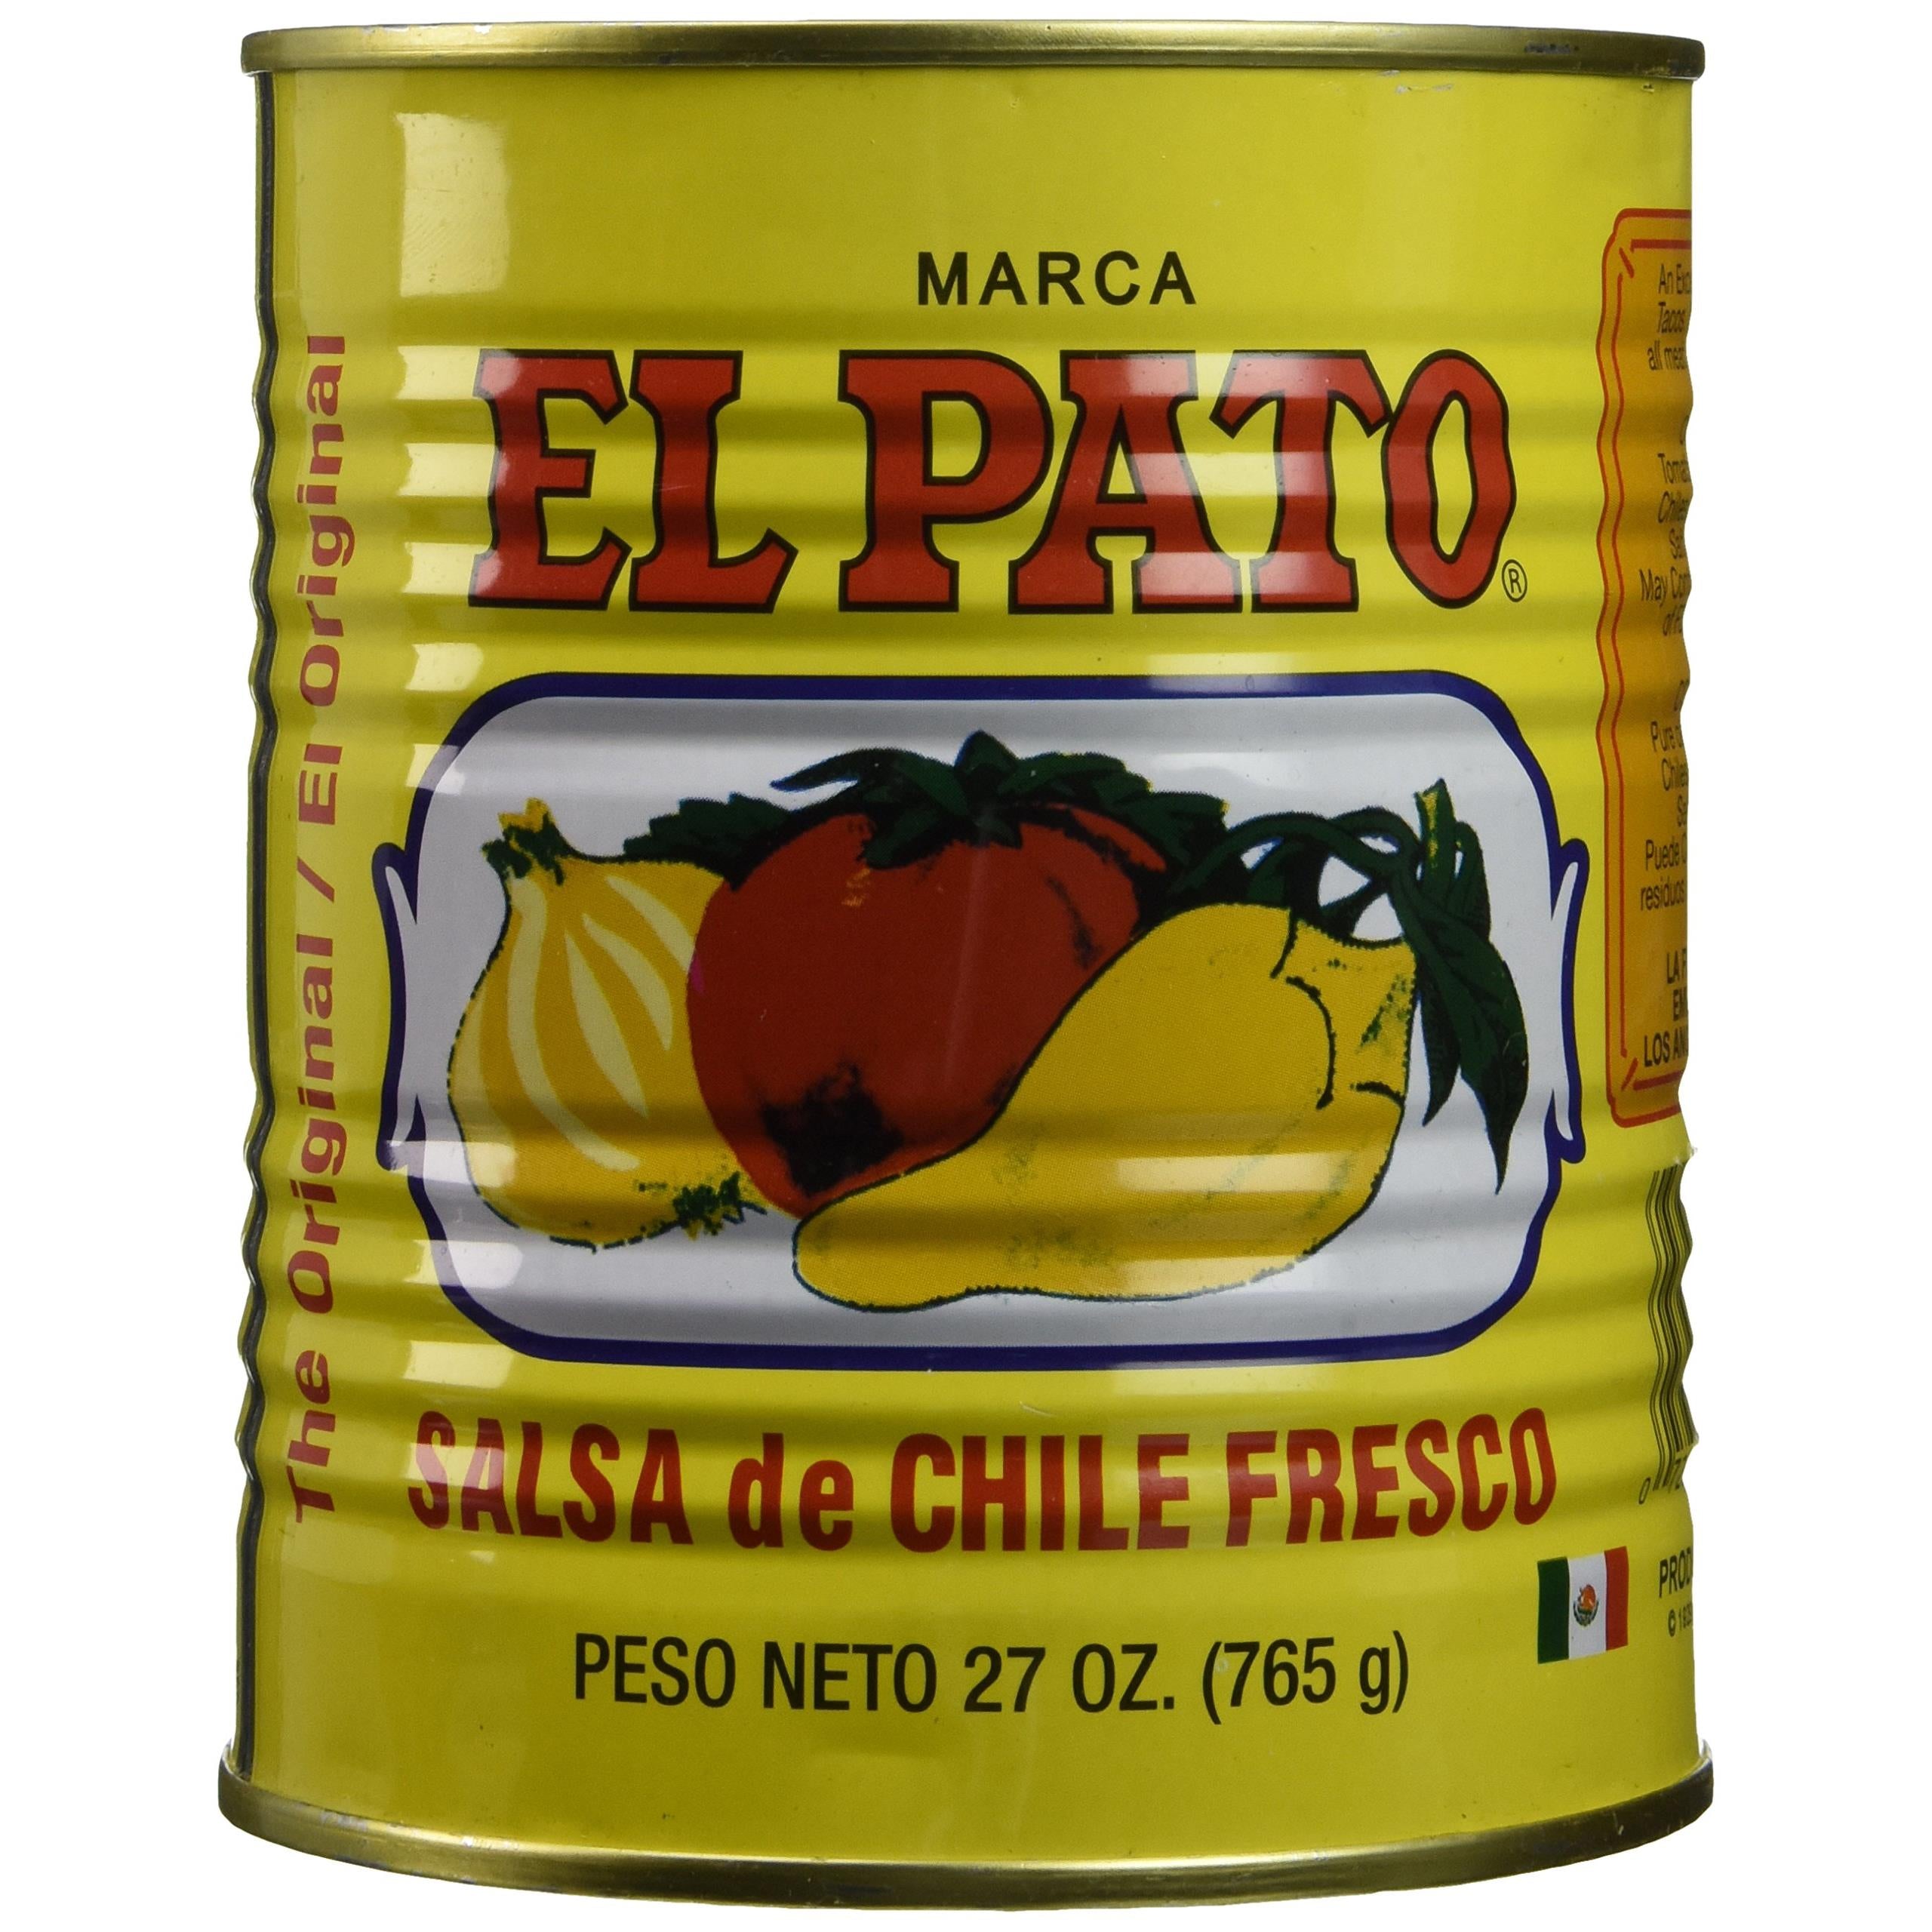 El Pato Hot Tomato Sauce, 27 oz